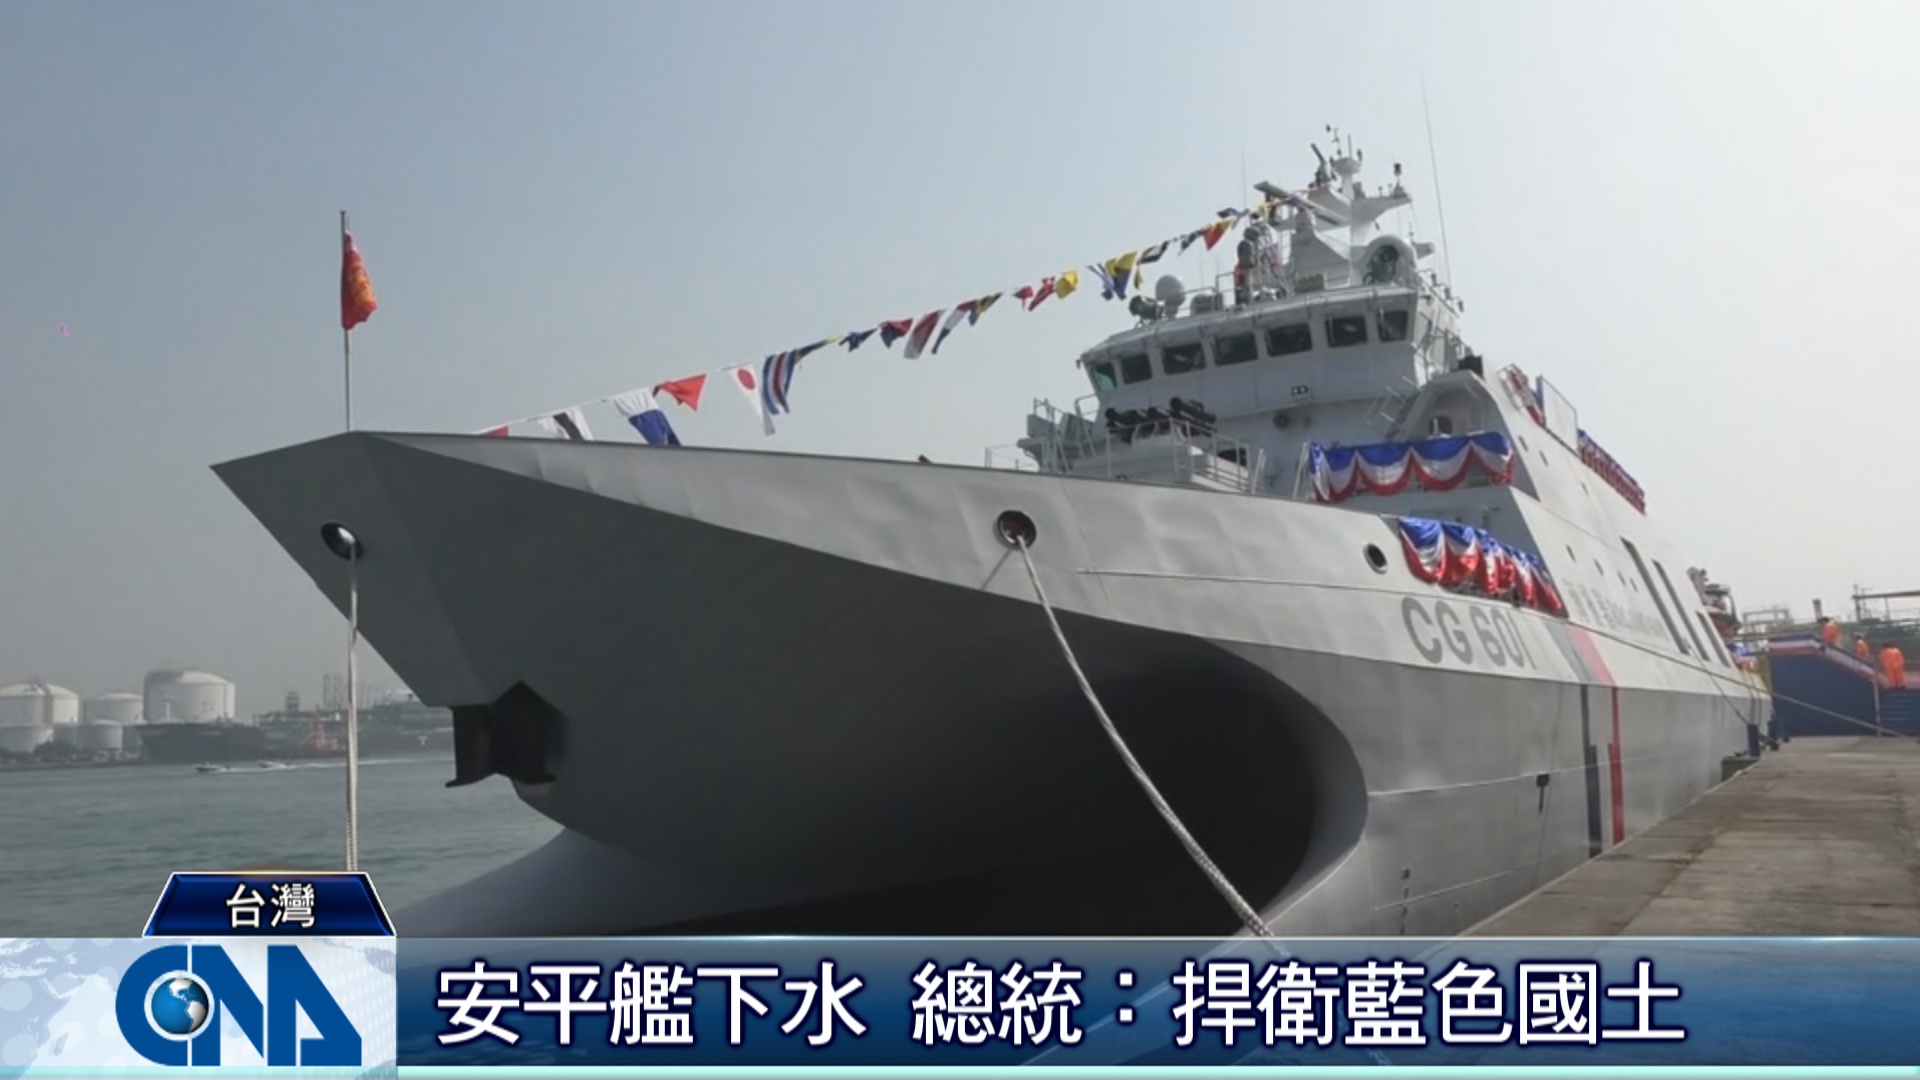 海巡安平艦具平戰轉換功能可掛載雄風飛彈 政治 中央社cna